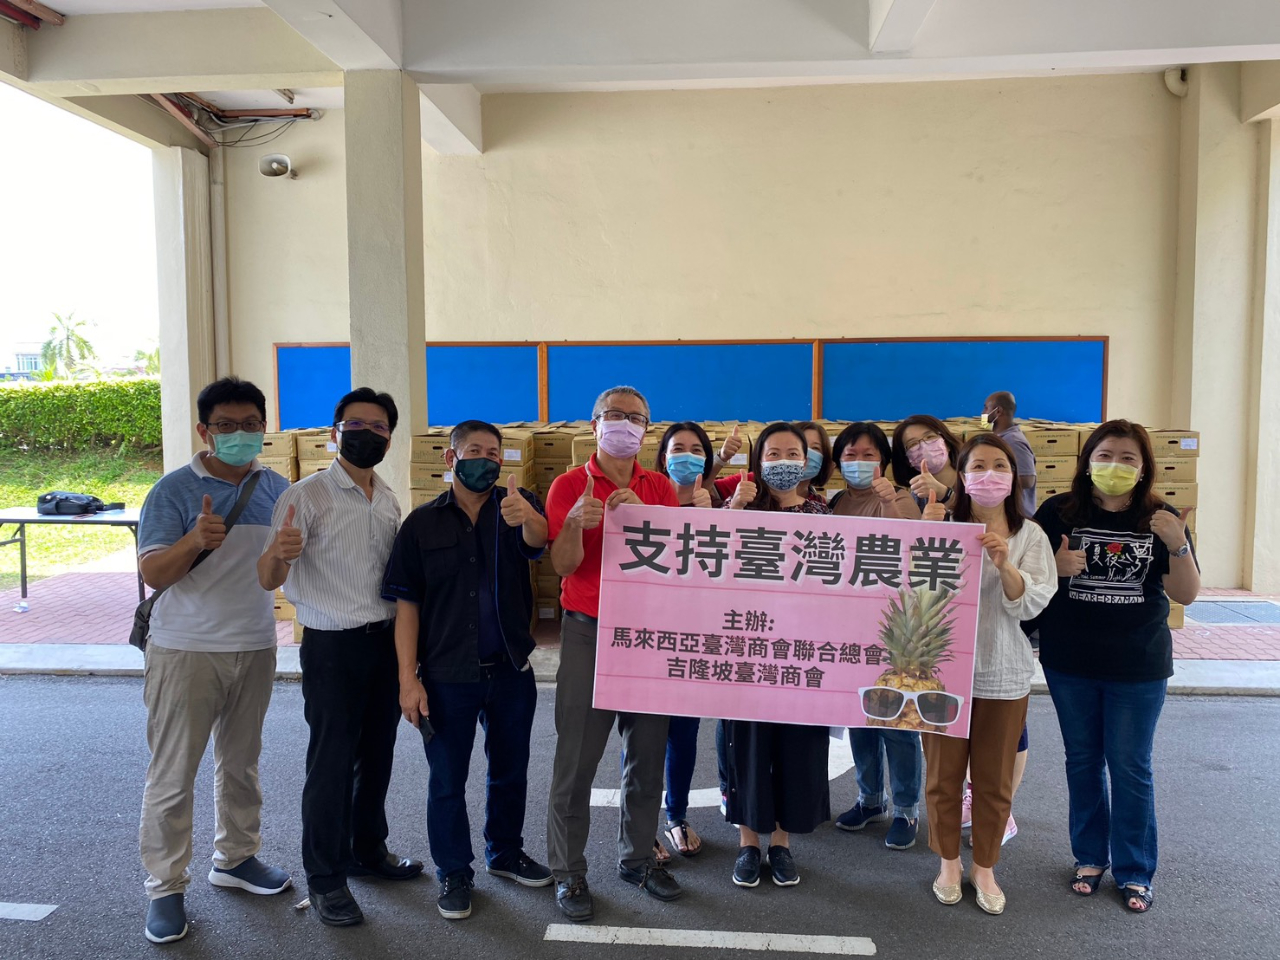 吉隆坡臺商會會員朋友至吉隆坡臺灣學校一起協助分送鳳梨